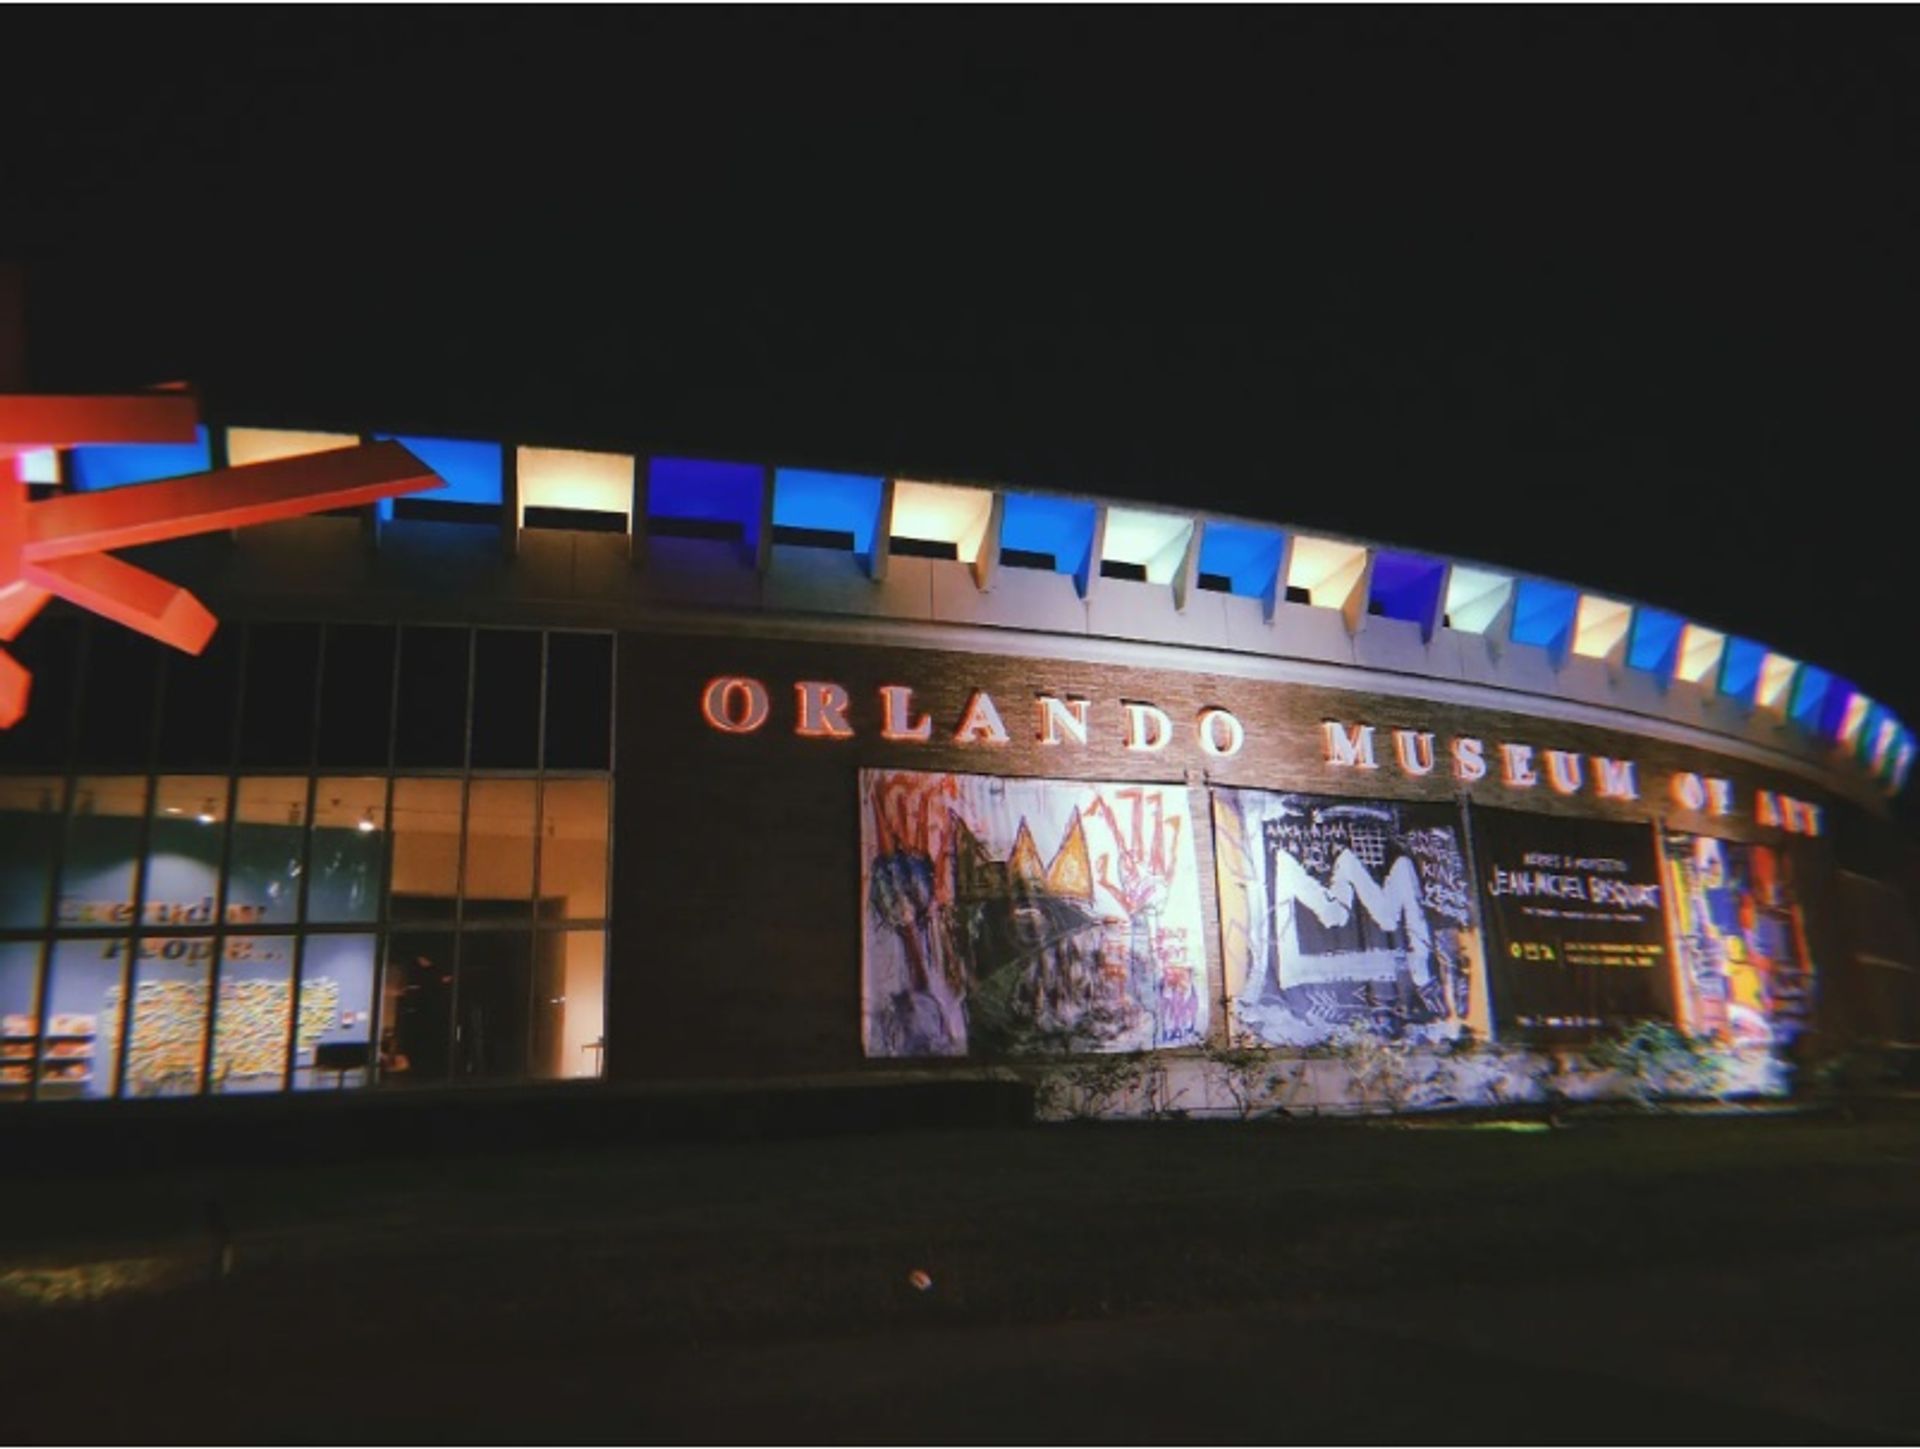 מוזיאון אורלנדו לאמנות עם הכרזות לקידום תערוכת בסקיאט

צילום: אתנה אילוז/Flickr